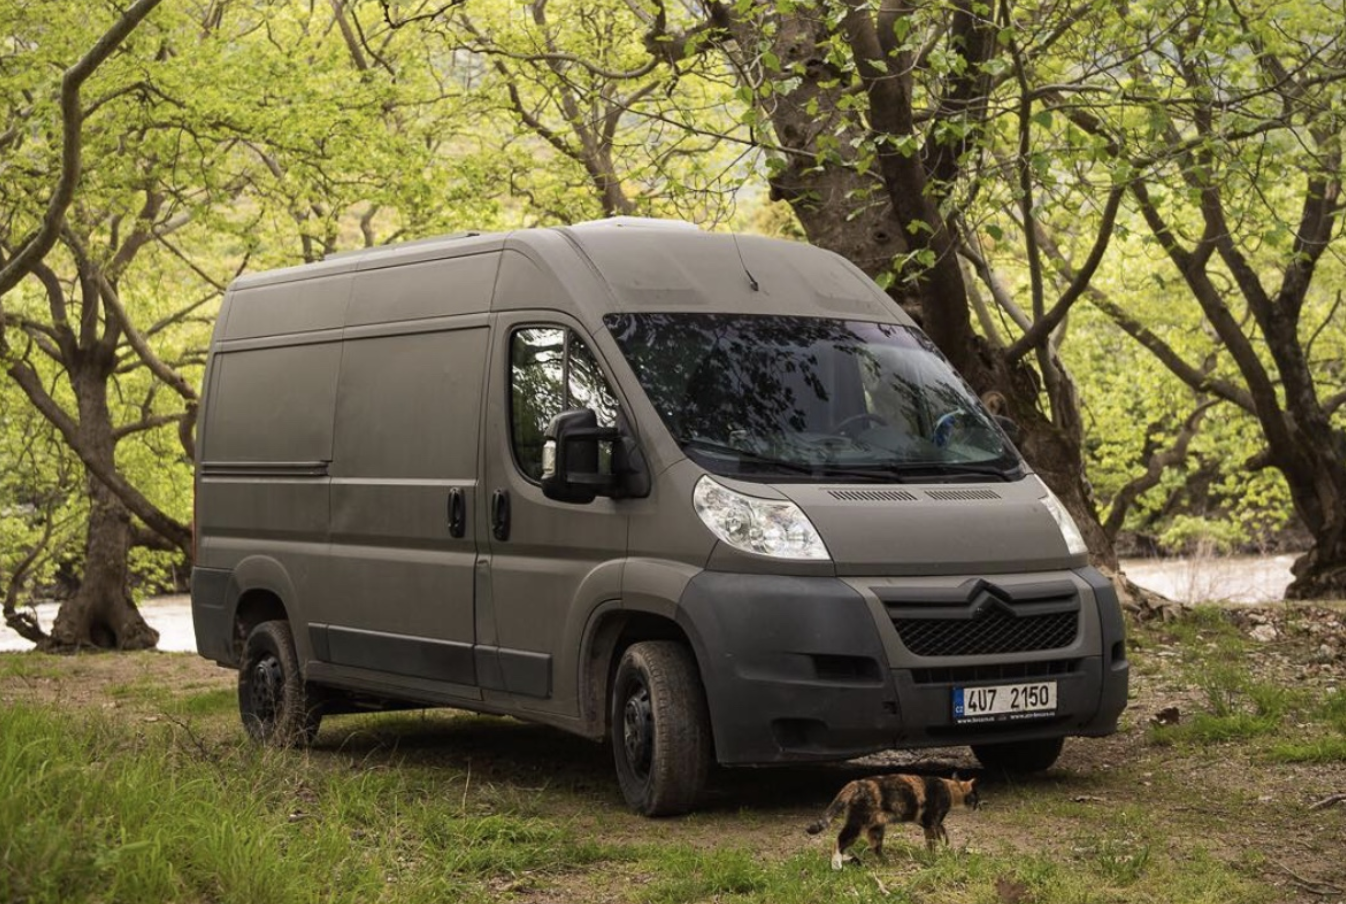 stealth camper van for sale usa